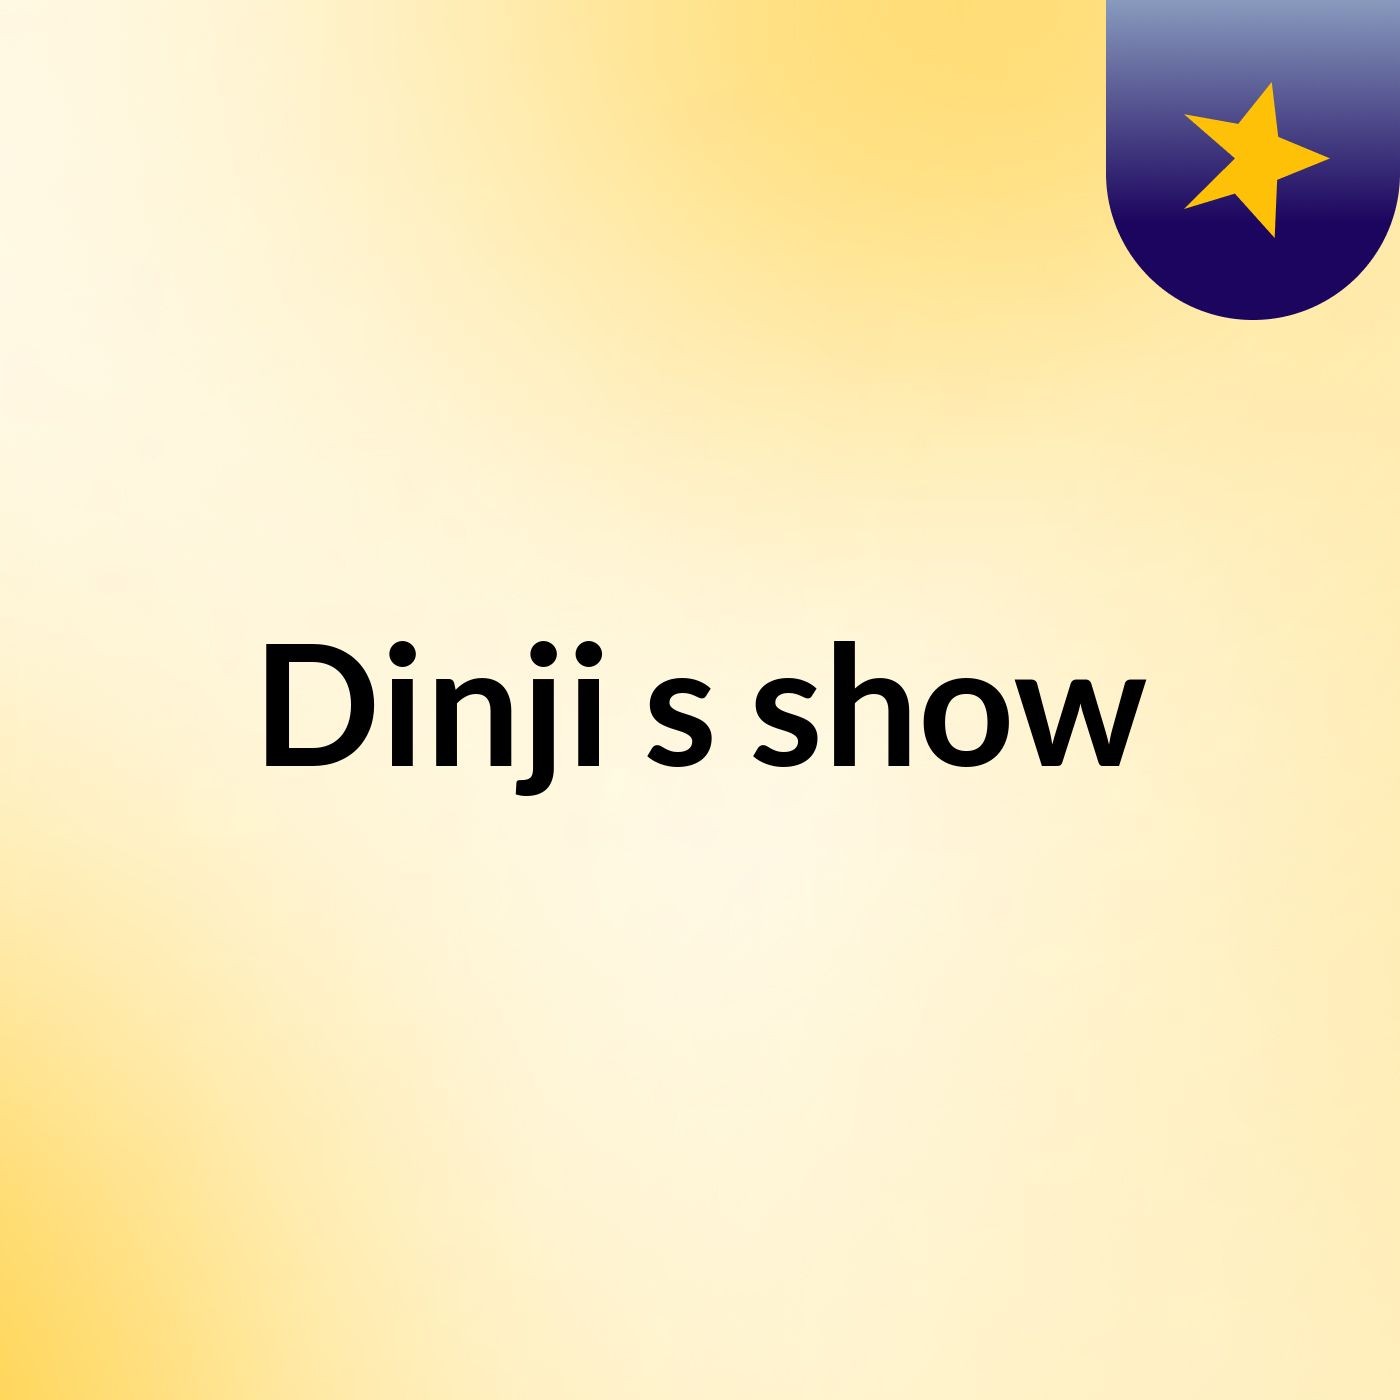 Dinji's show